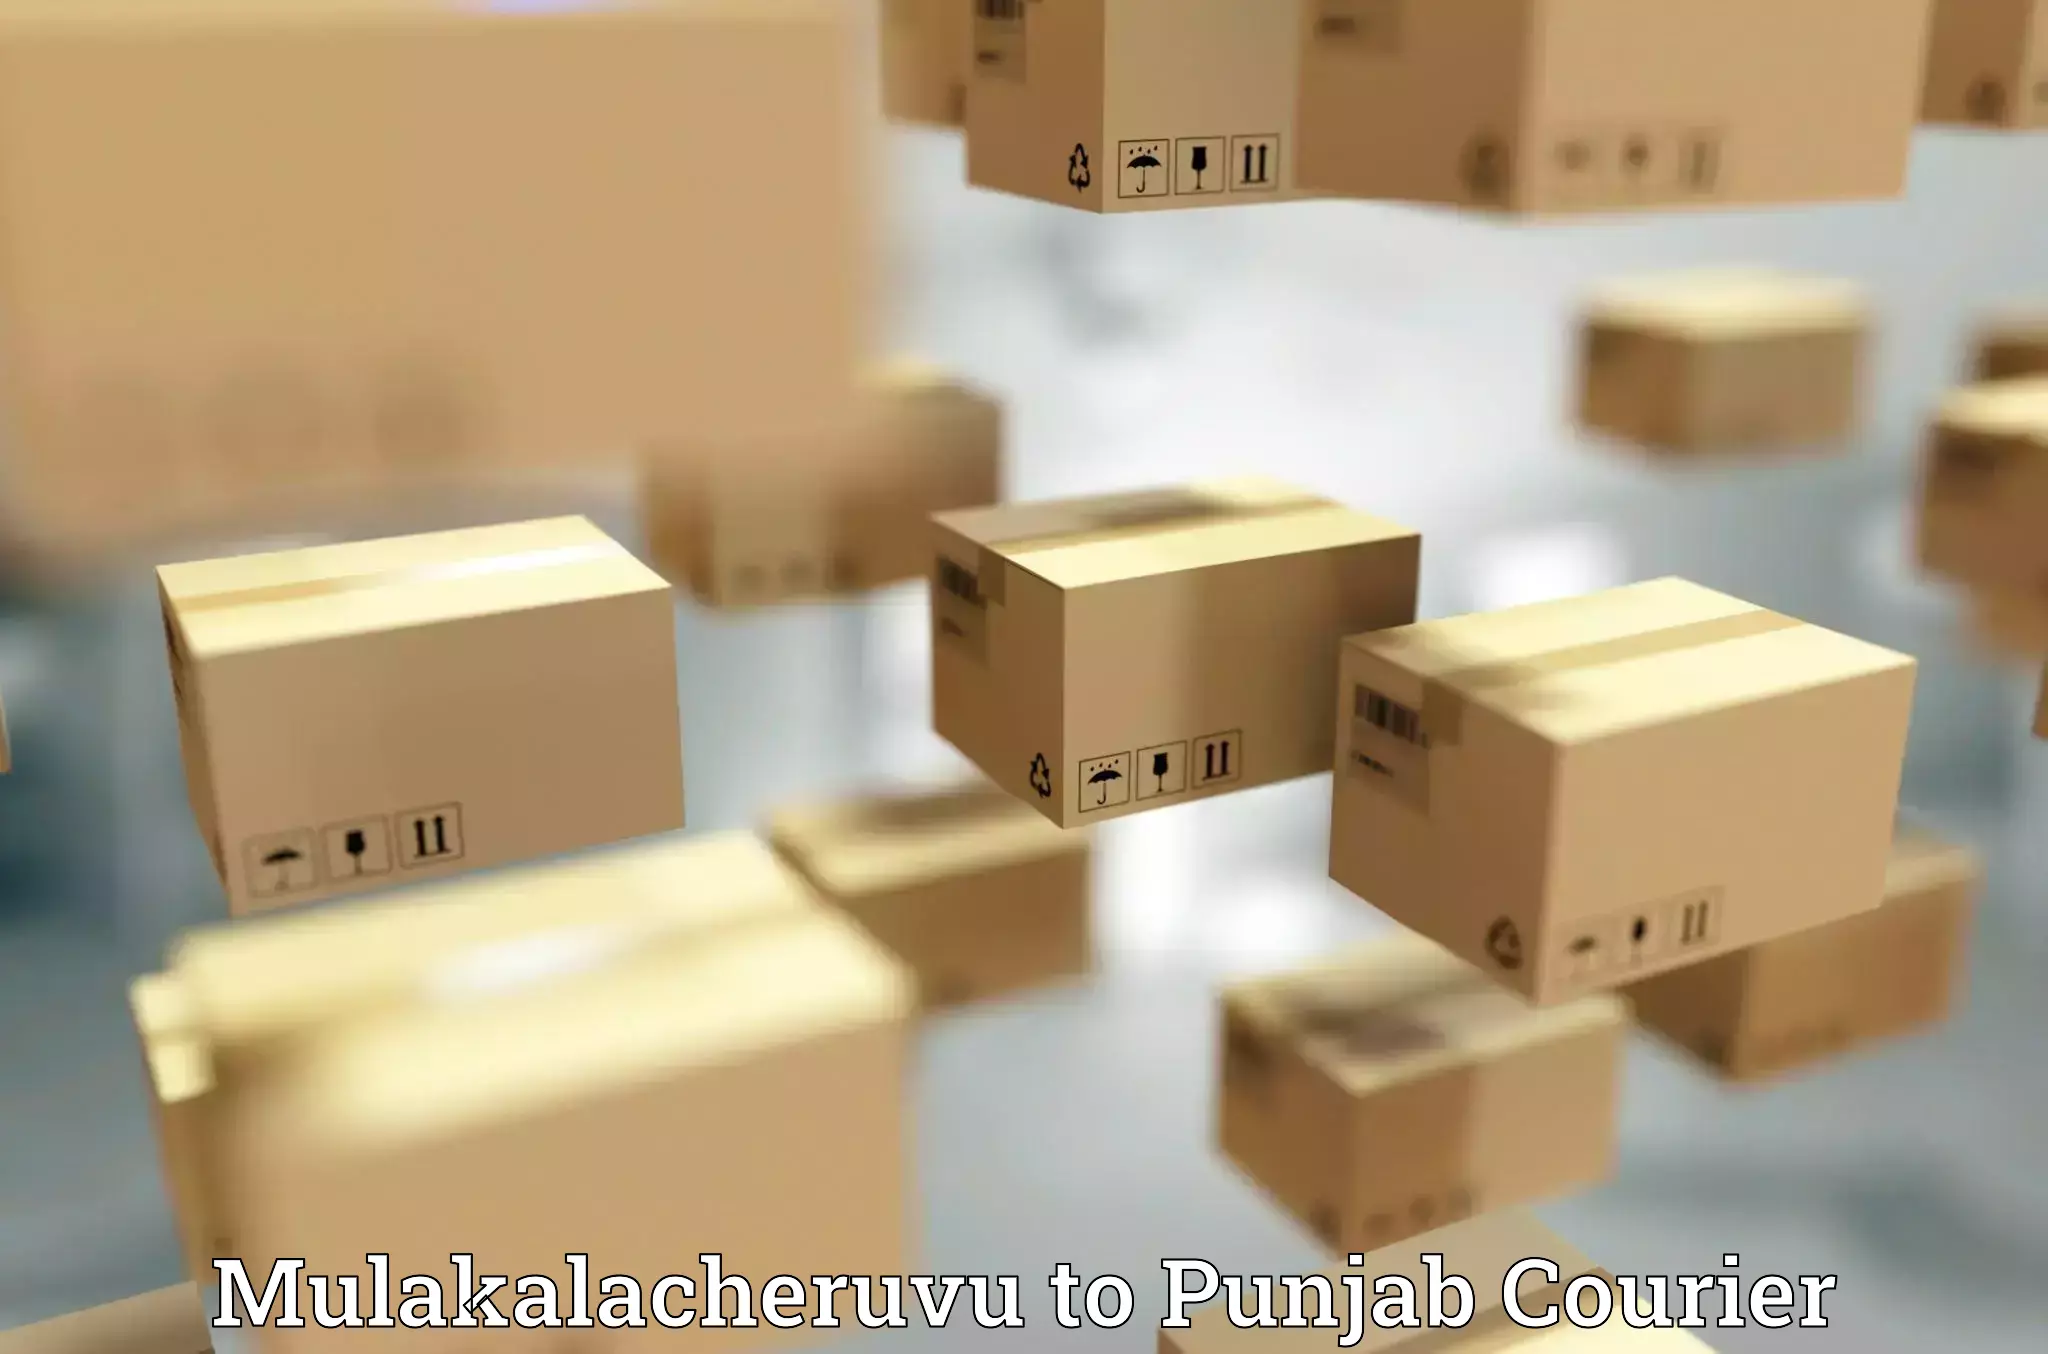 Courier service comparison Mulakalacheruvu to Punjab